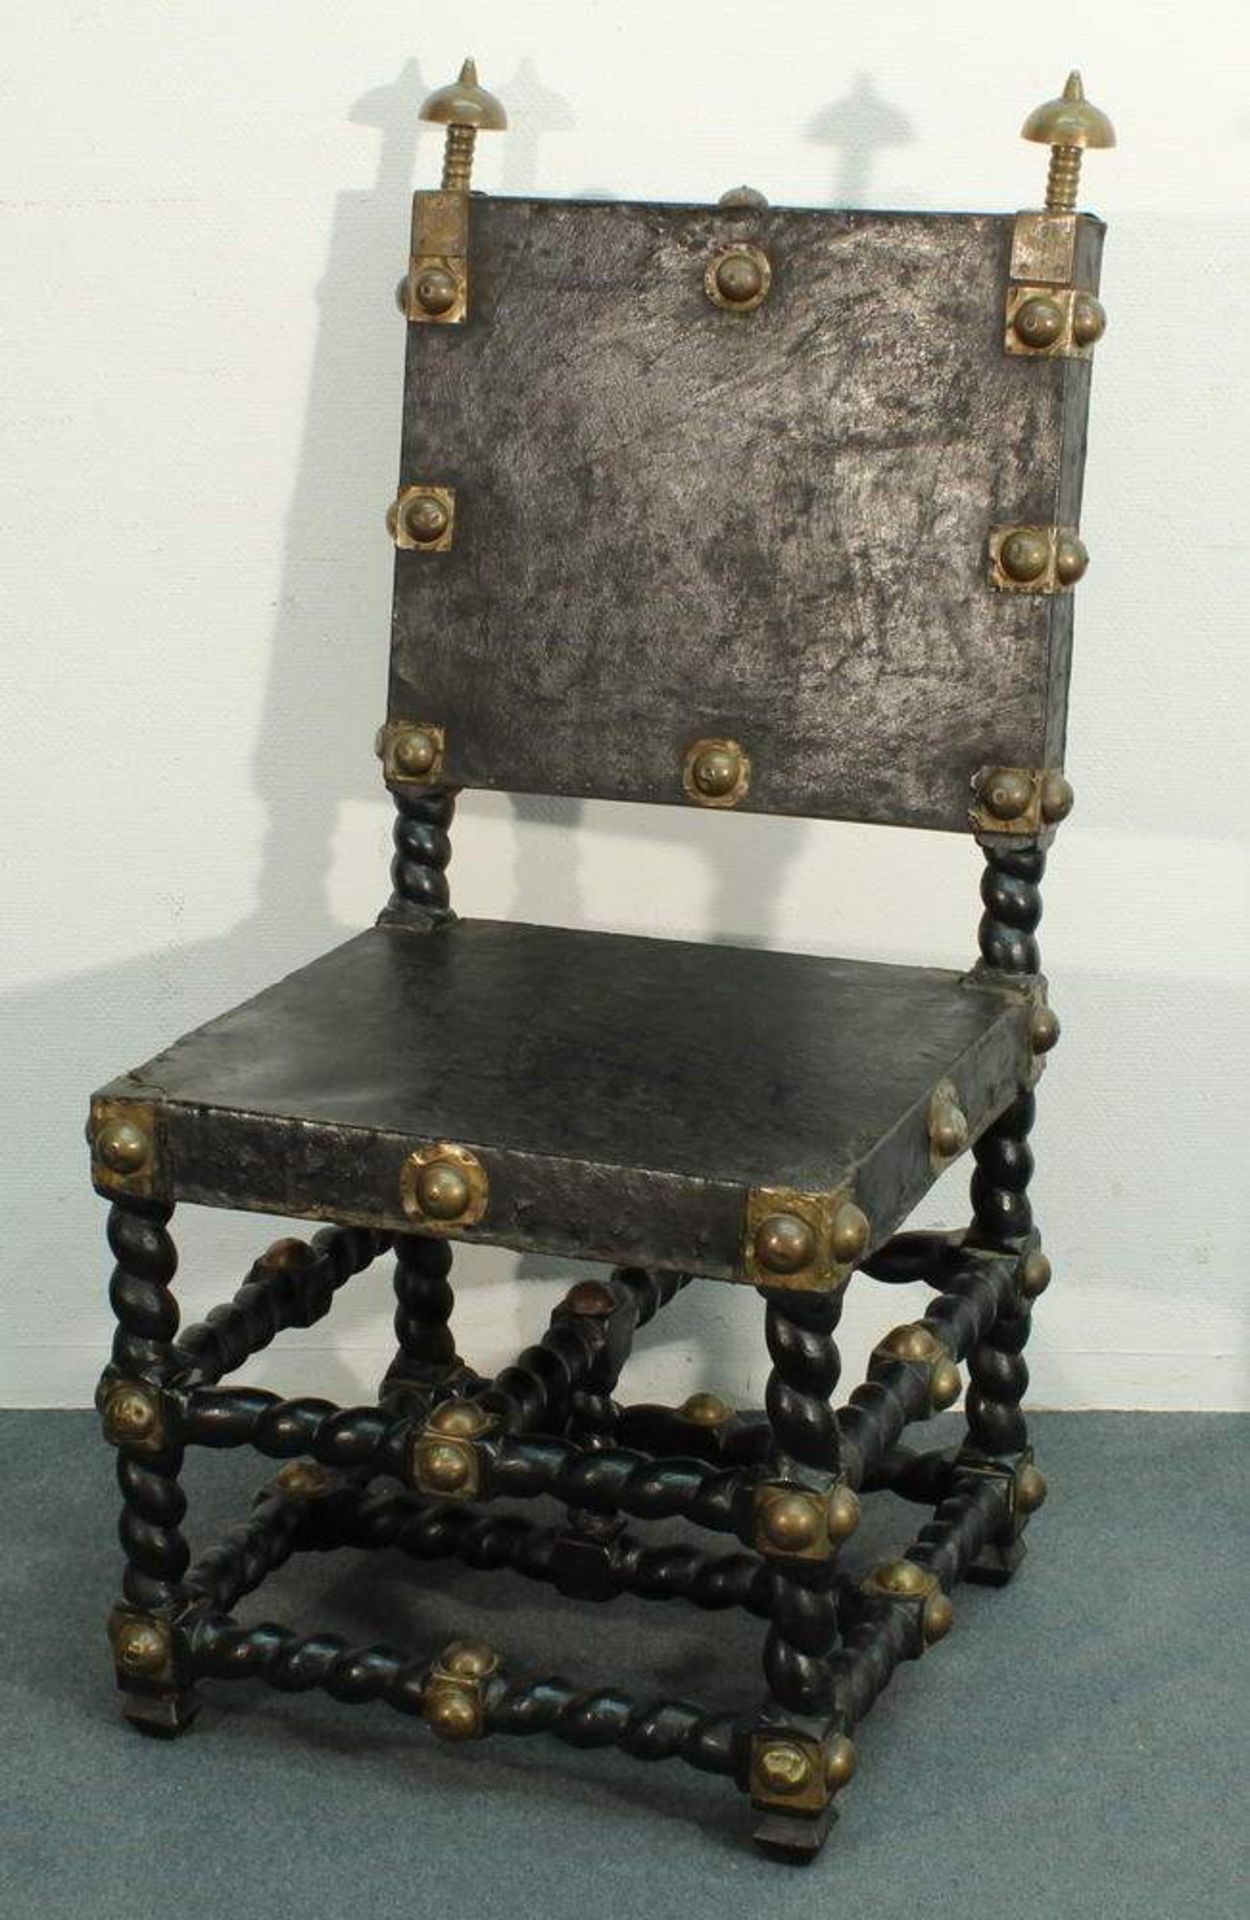 Stuhl, Afrika, Holzgestell und Ledersitz geschwärzt, Zierbeschläge aus Messingblech, 108 cm hoch